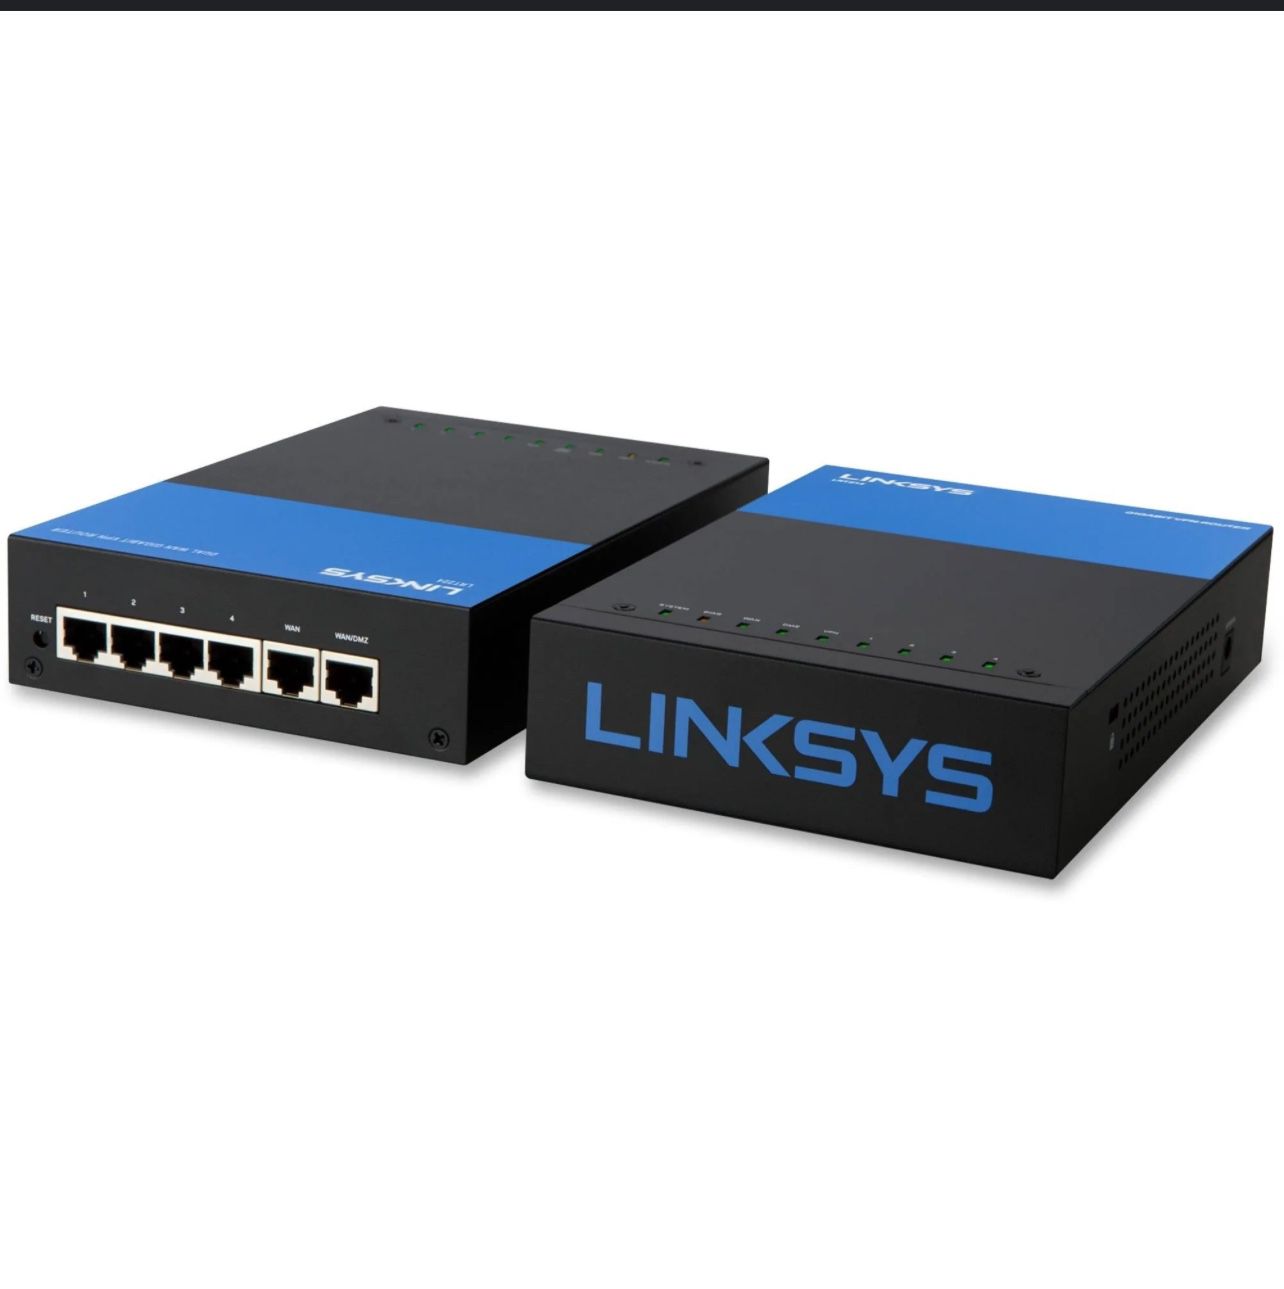 Linksys LRT214 Business Gigabit VPN Router